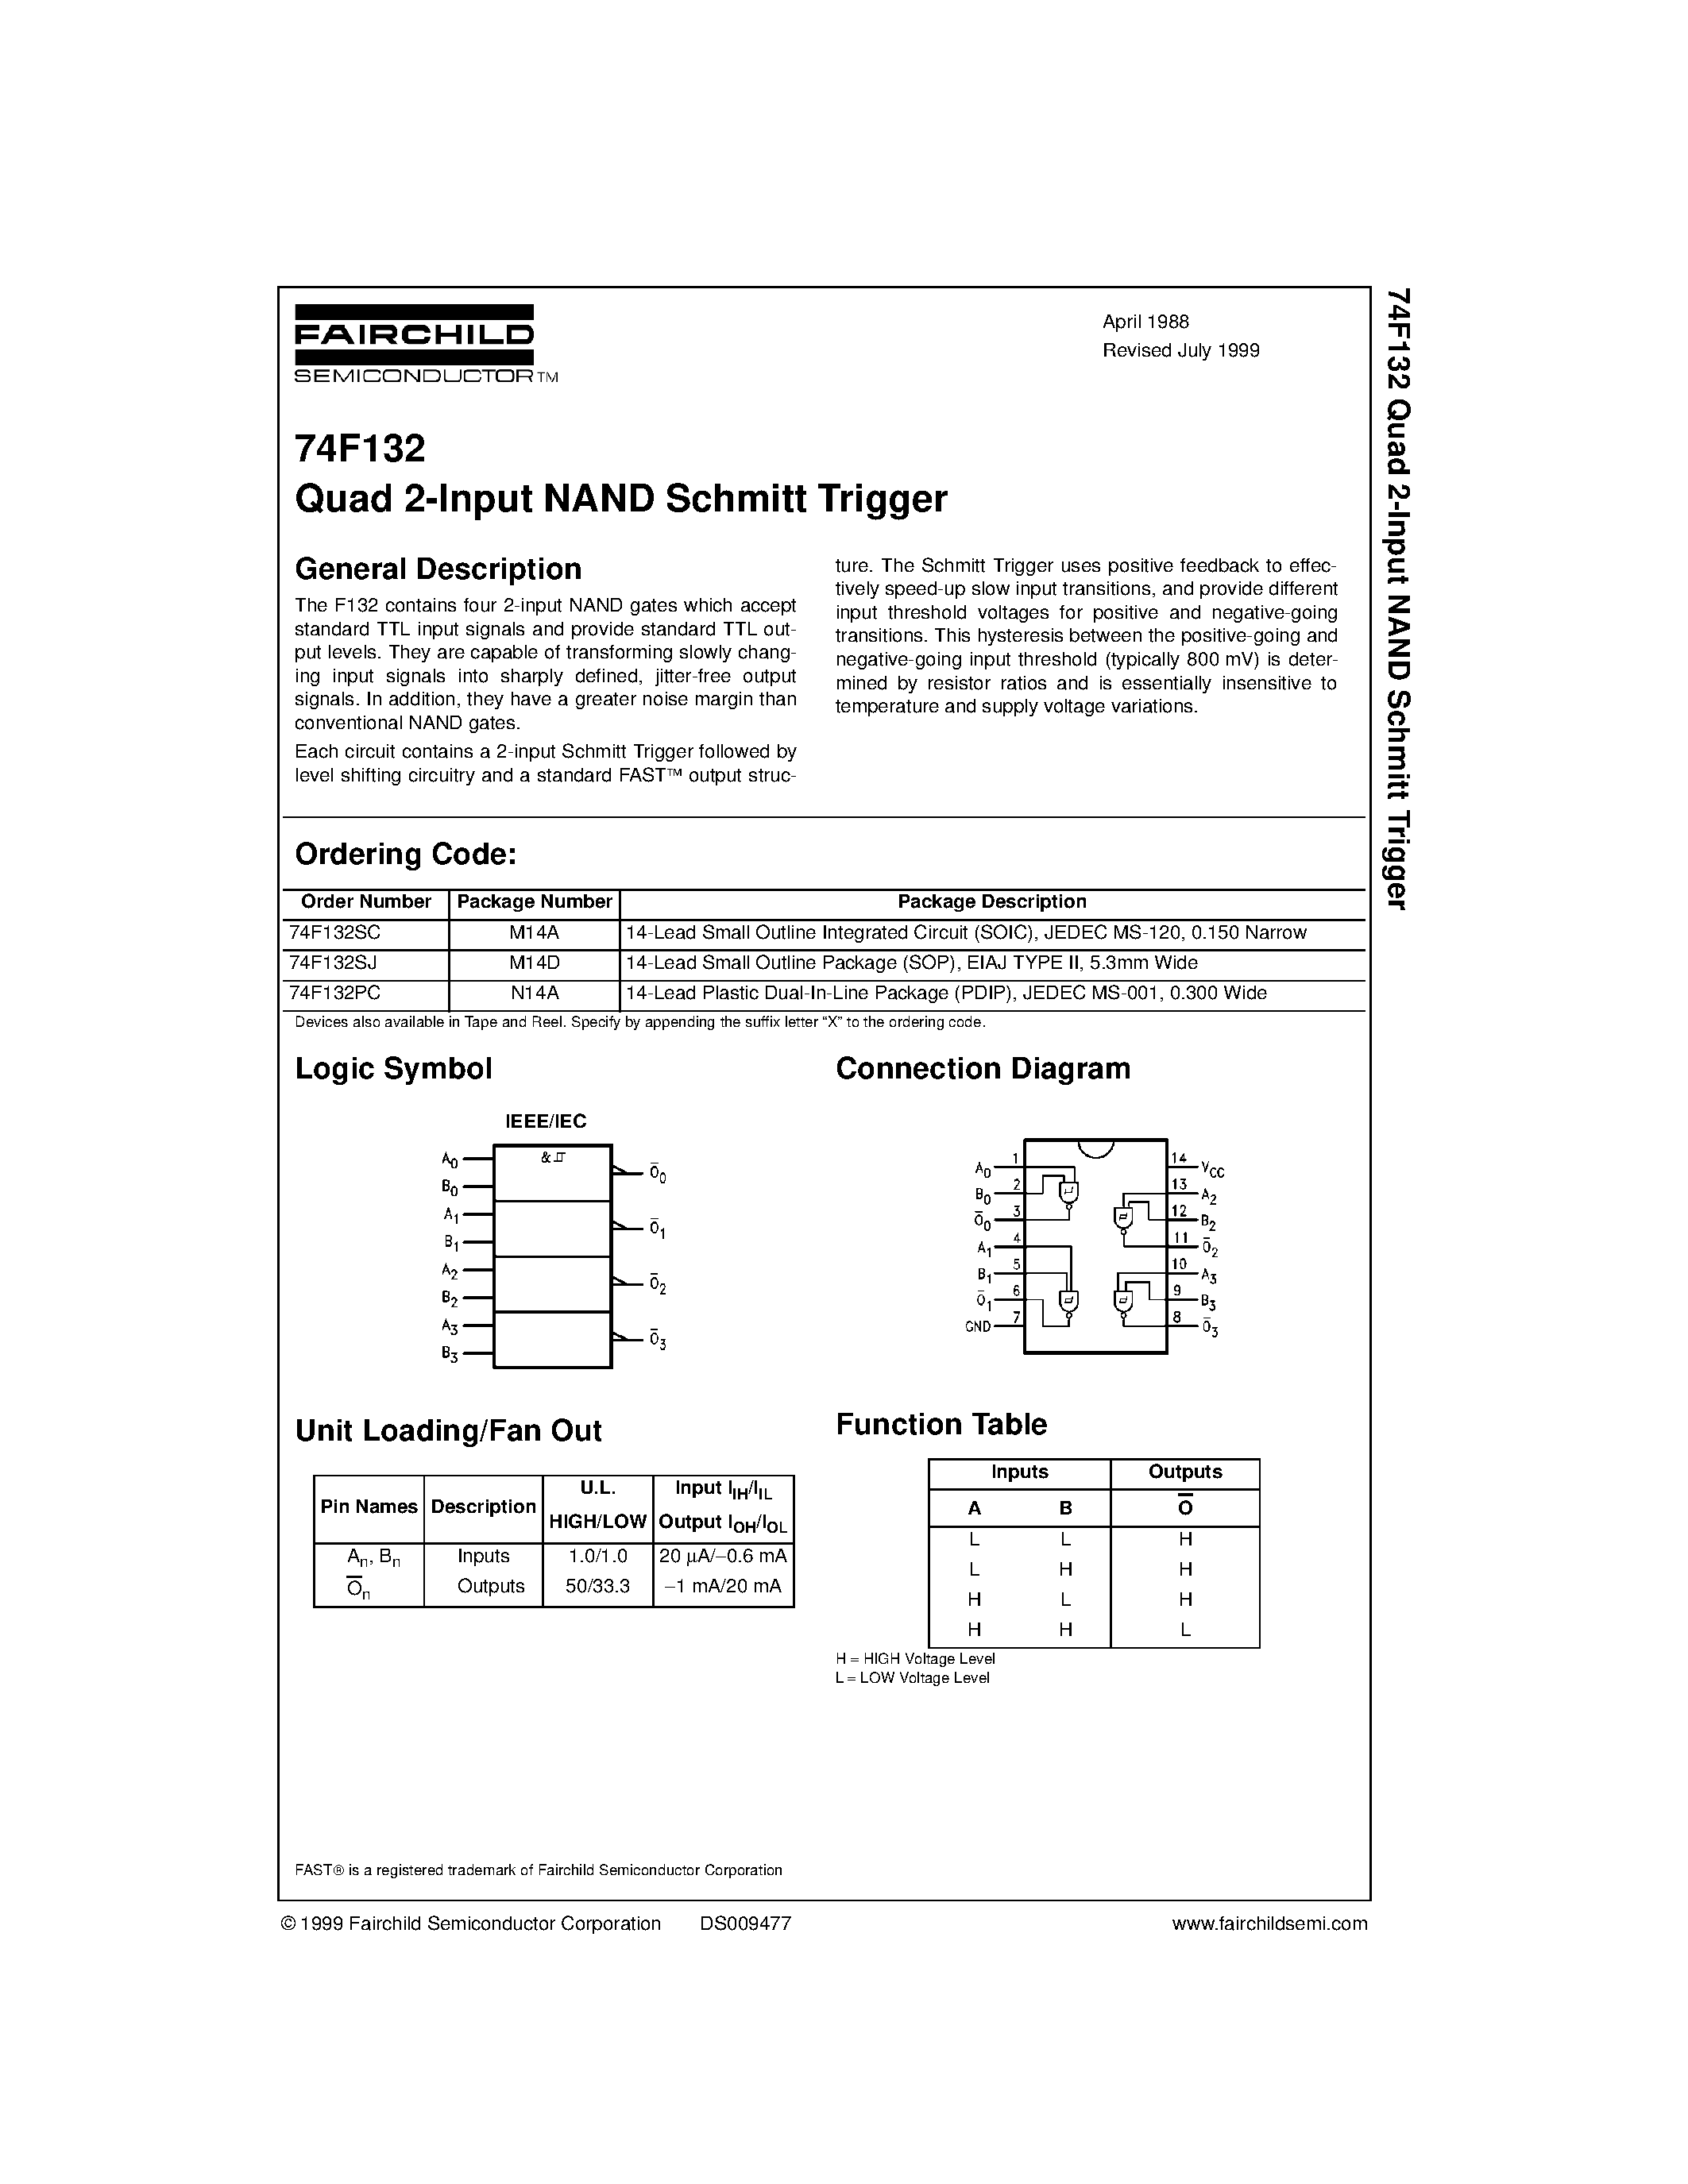 Даташит 74F132PC - Quad 2-Input NAND Schmitt Trigger страница 1